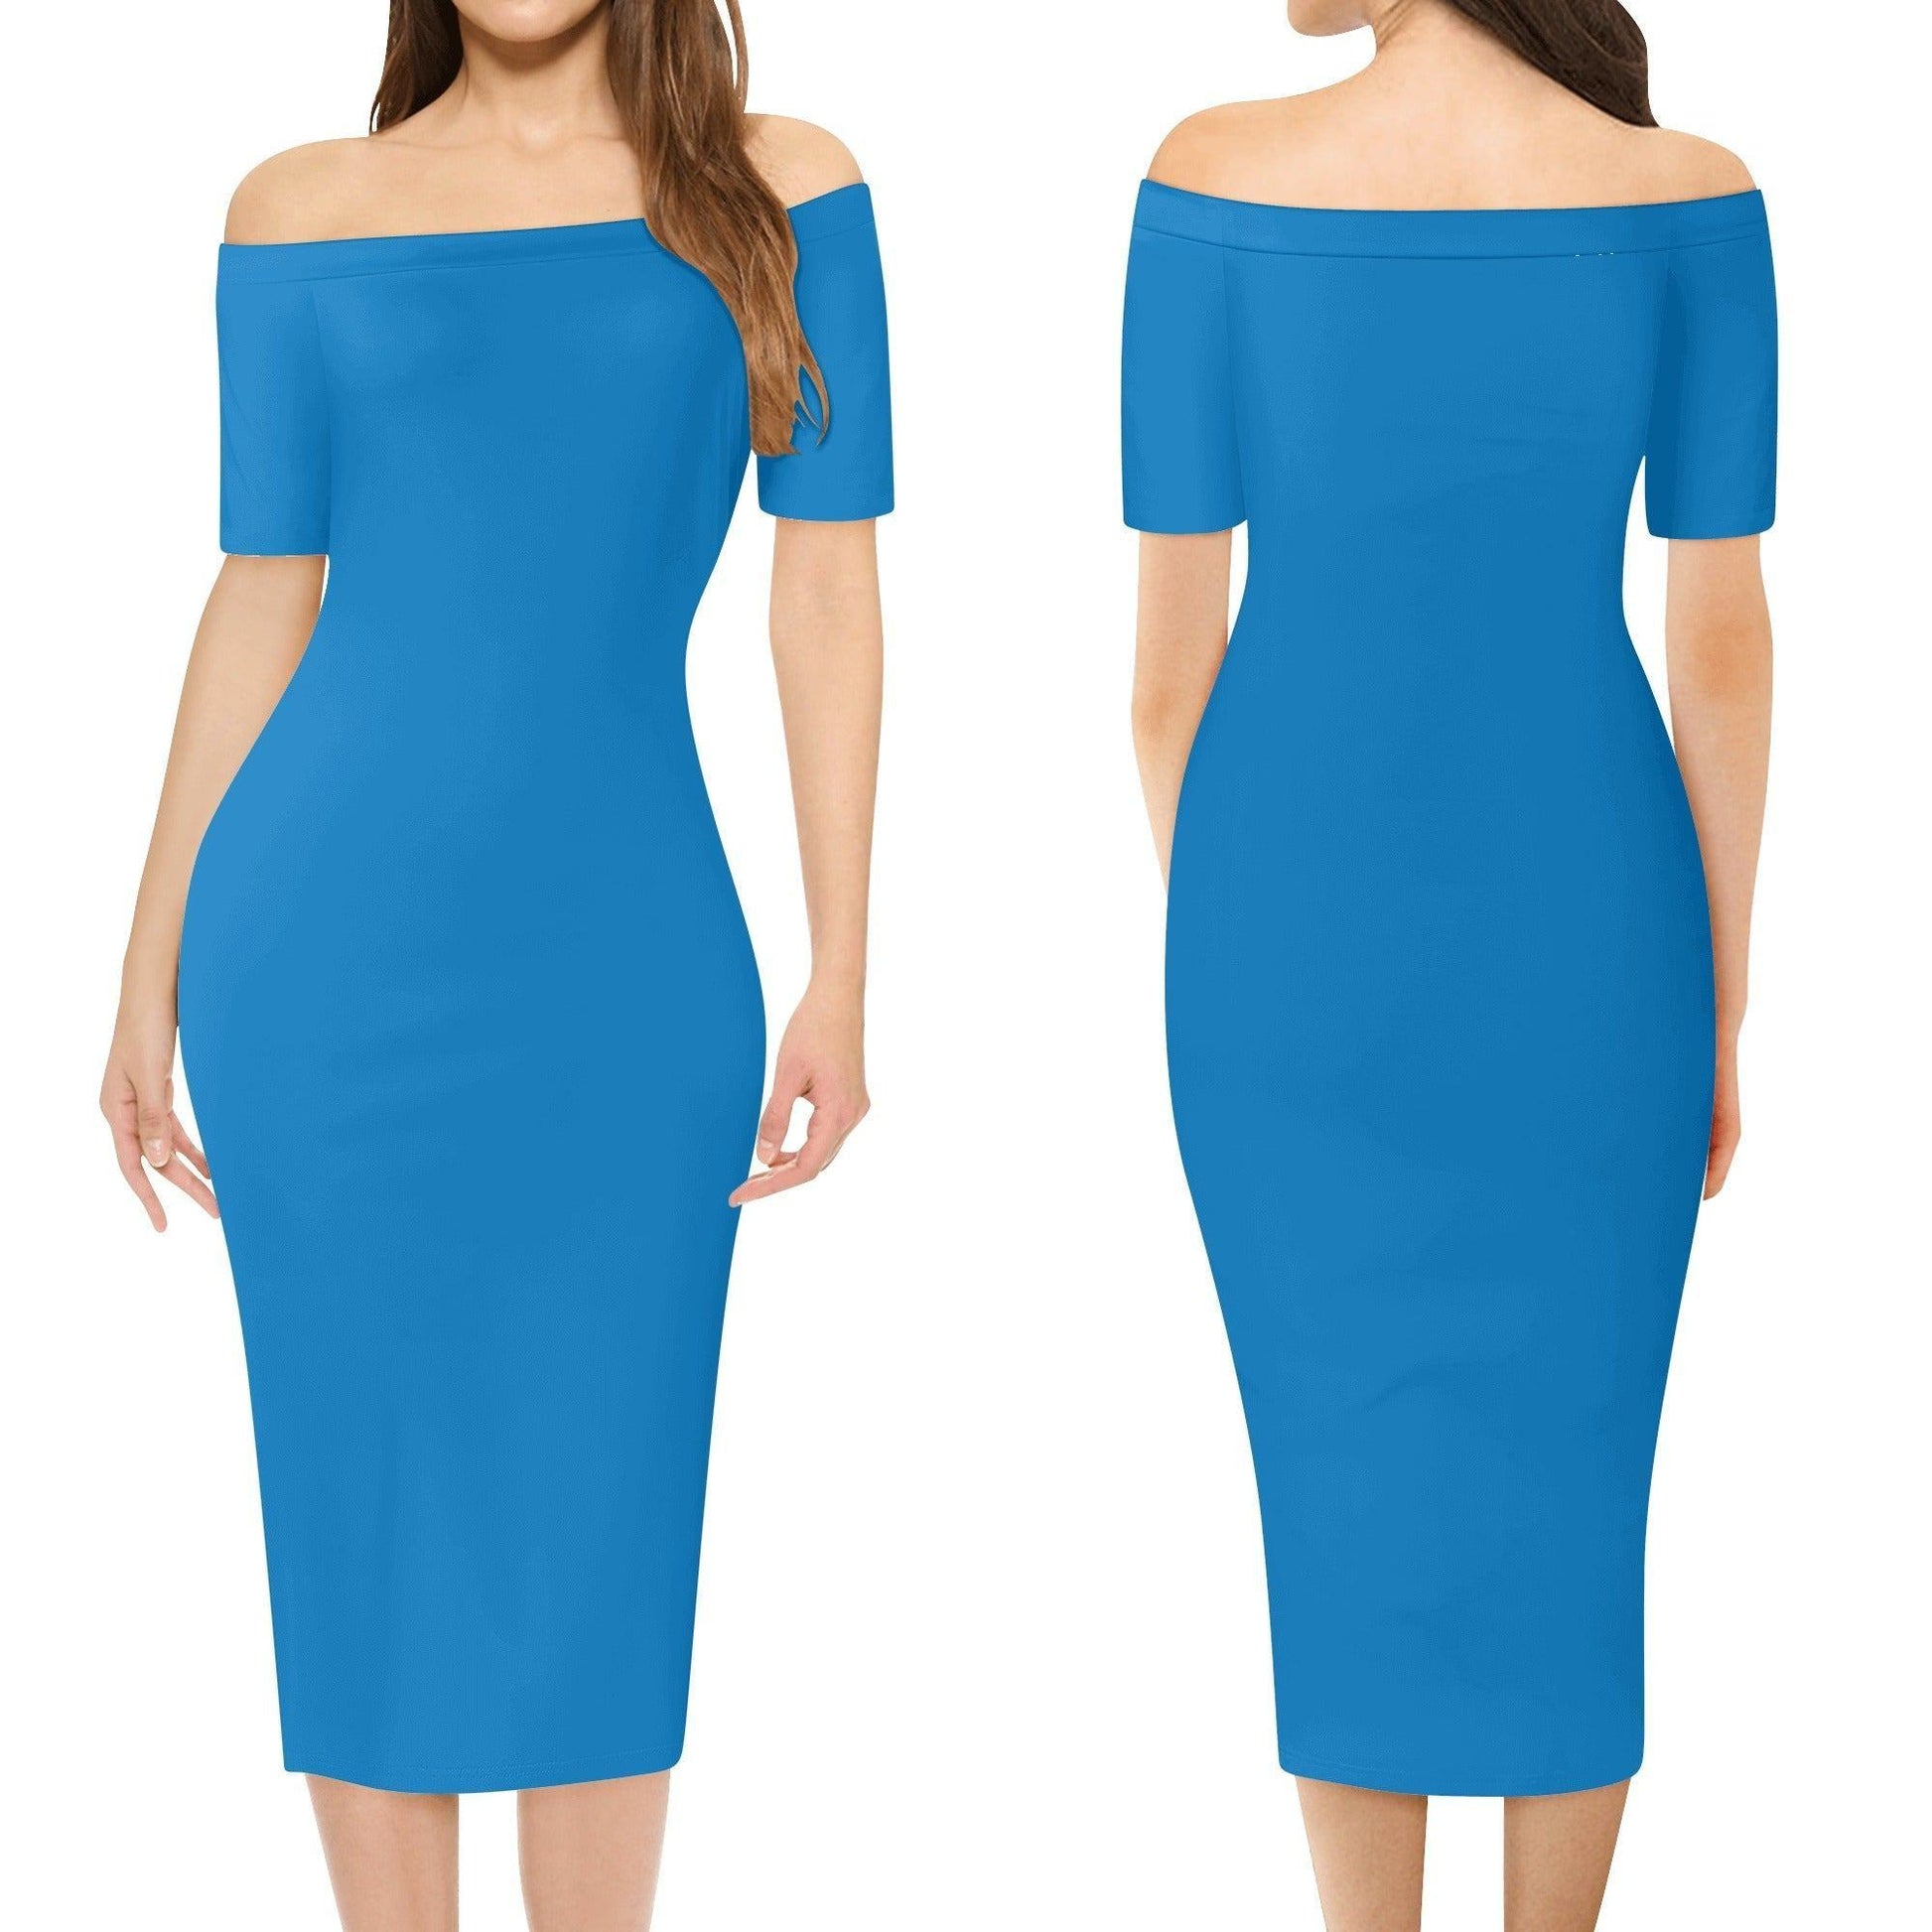 Navy Blue Off-Shoulder-Kleid -- Navy Blue Off-Shoulder-Kleid - undefined Off-Shoulder-Kleid | JLR Design